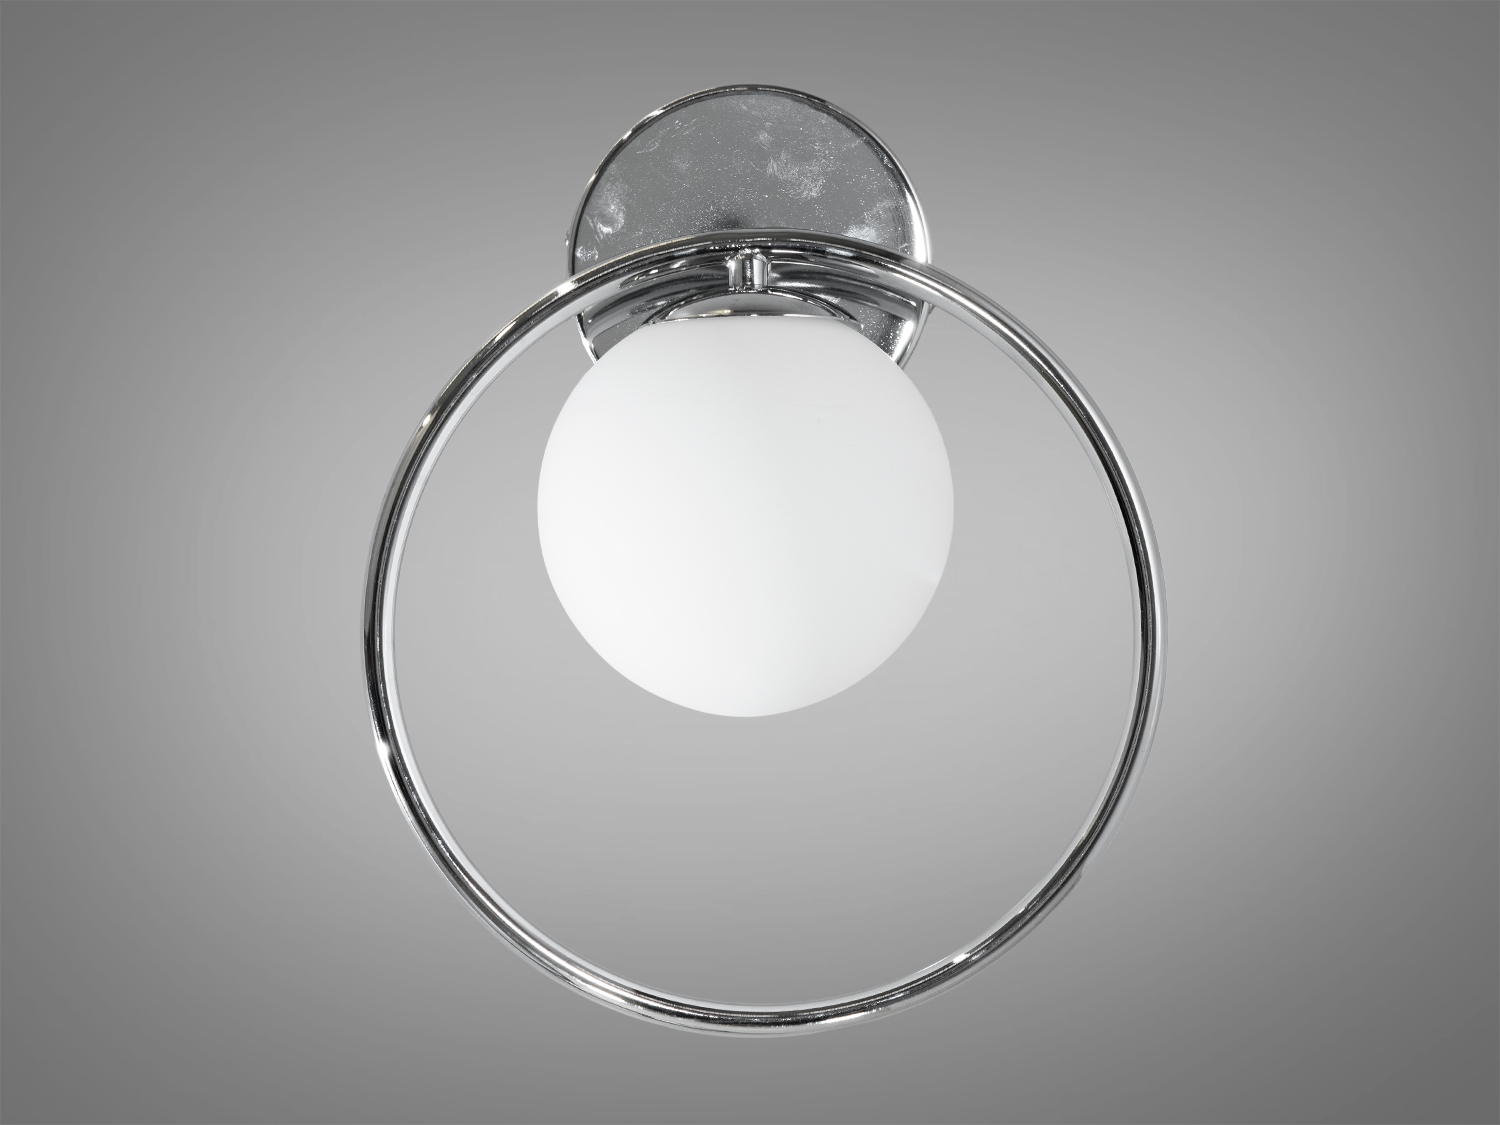 Унікальне, гармонійне бра в стилі лофт, срібного кольоруПодвесы LED, Минимализм, Светильники 